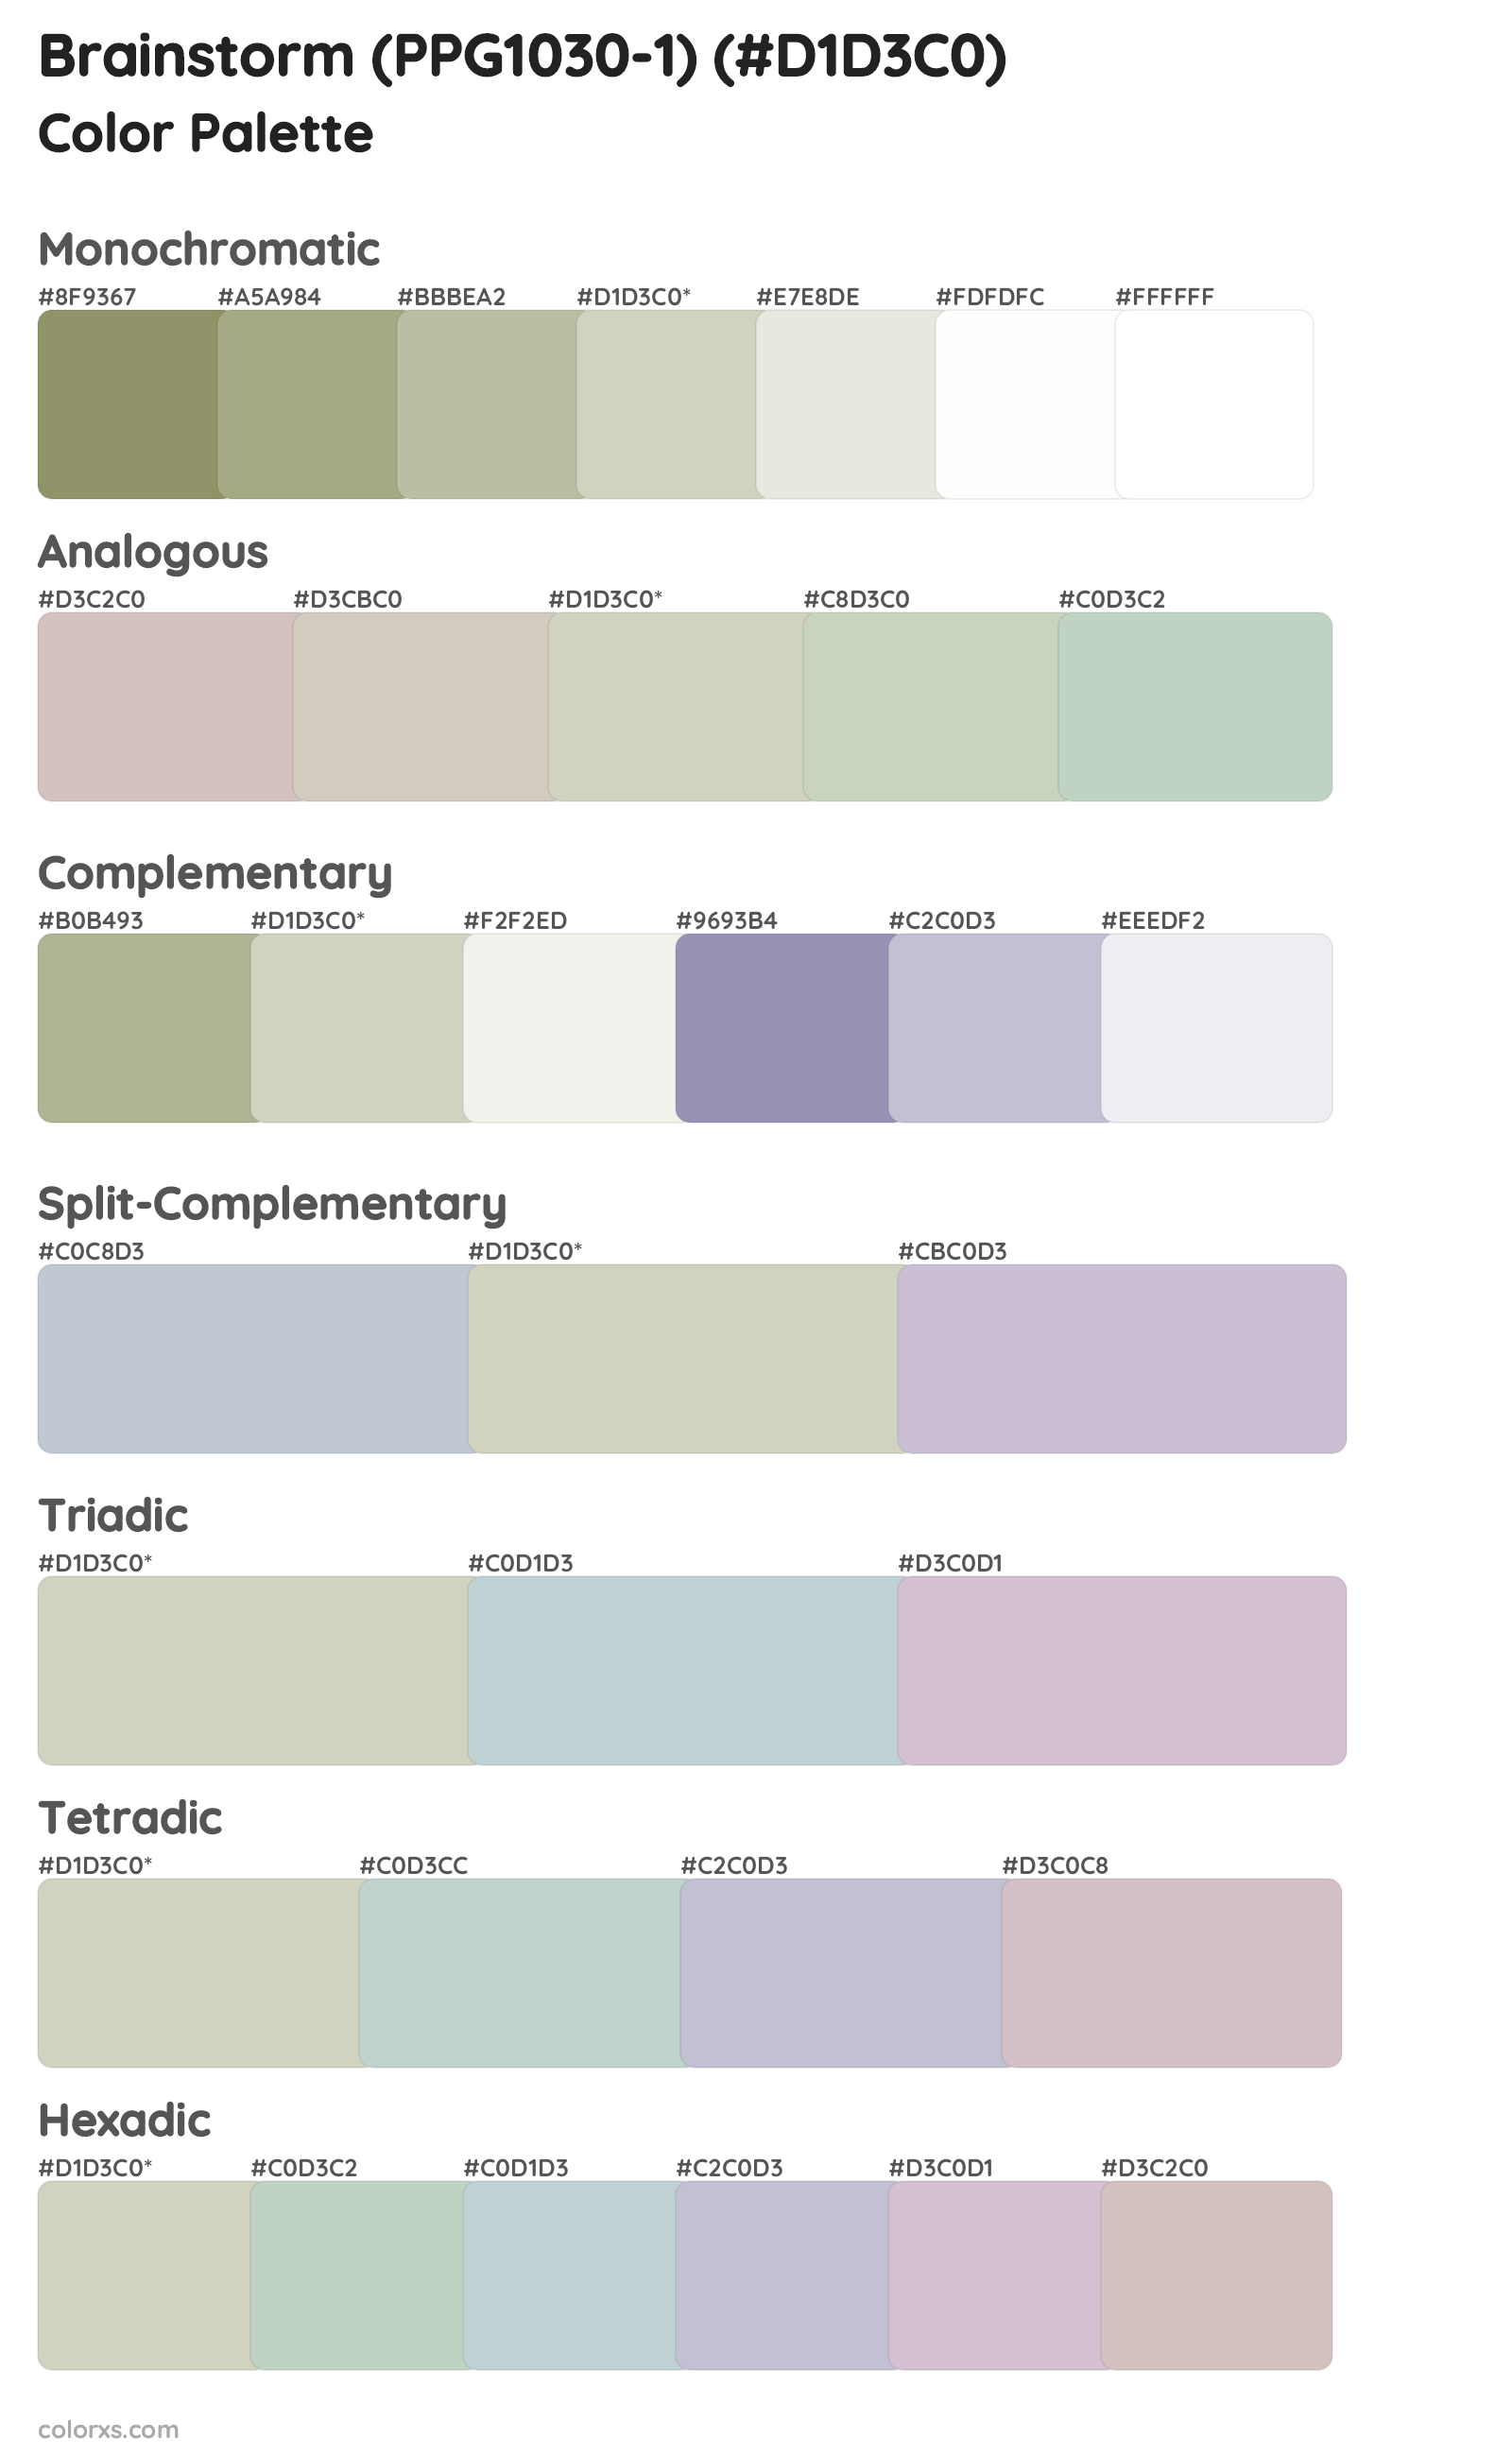 Brainstorm (PPG1030-1) Color Scheme Palettes